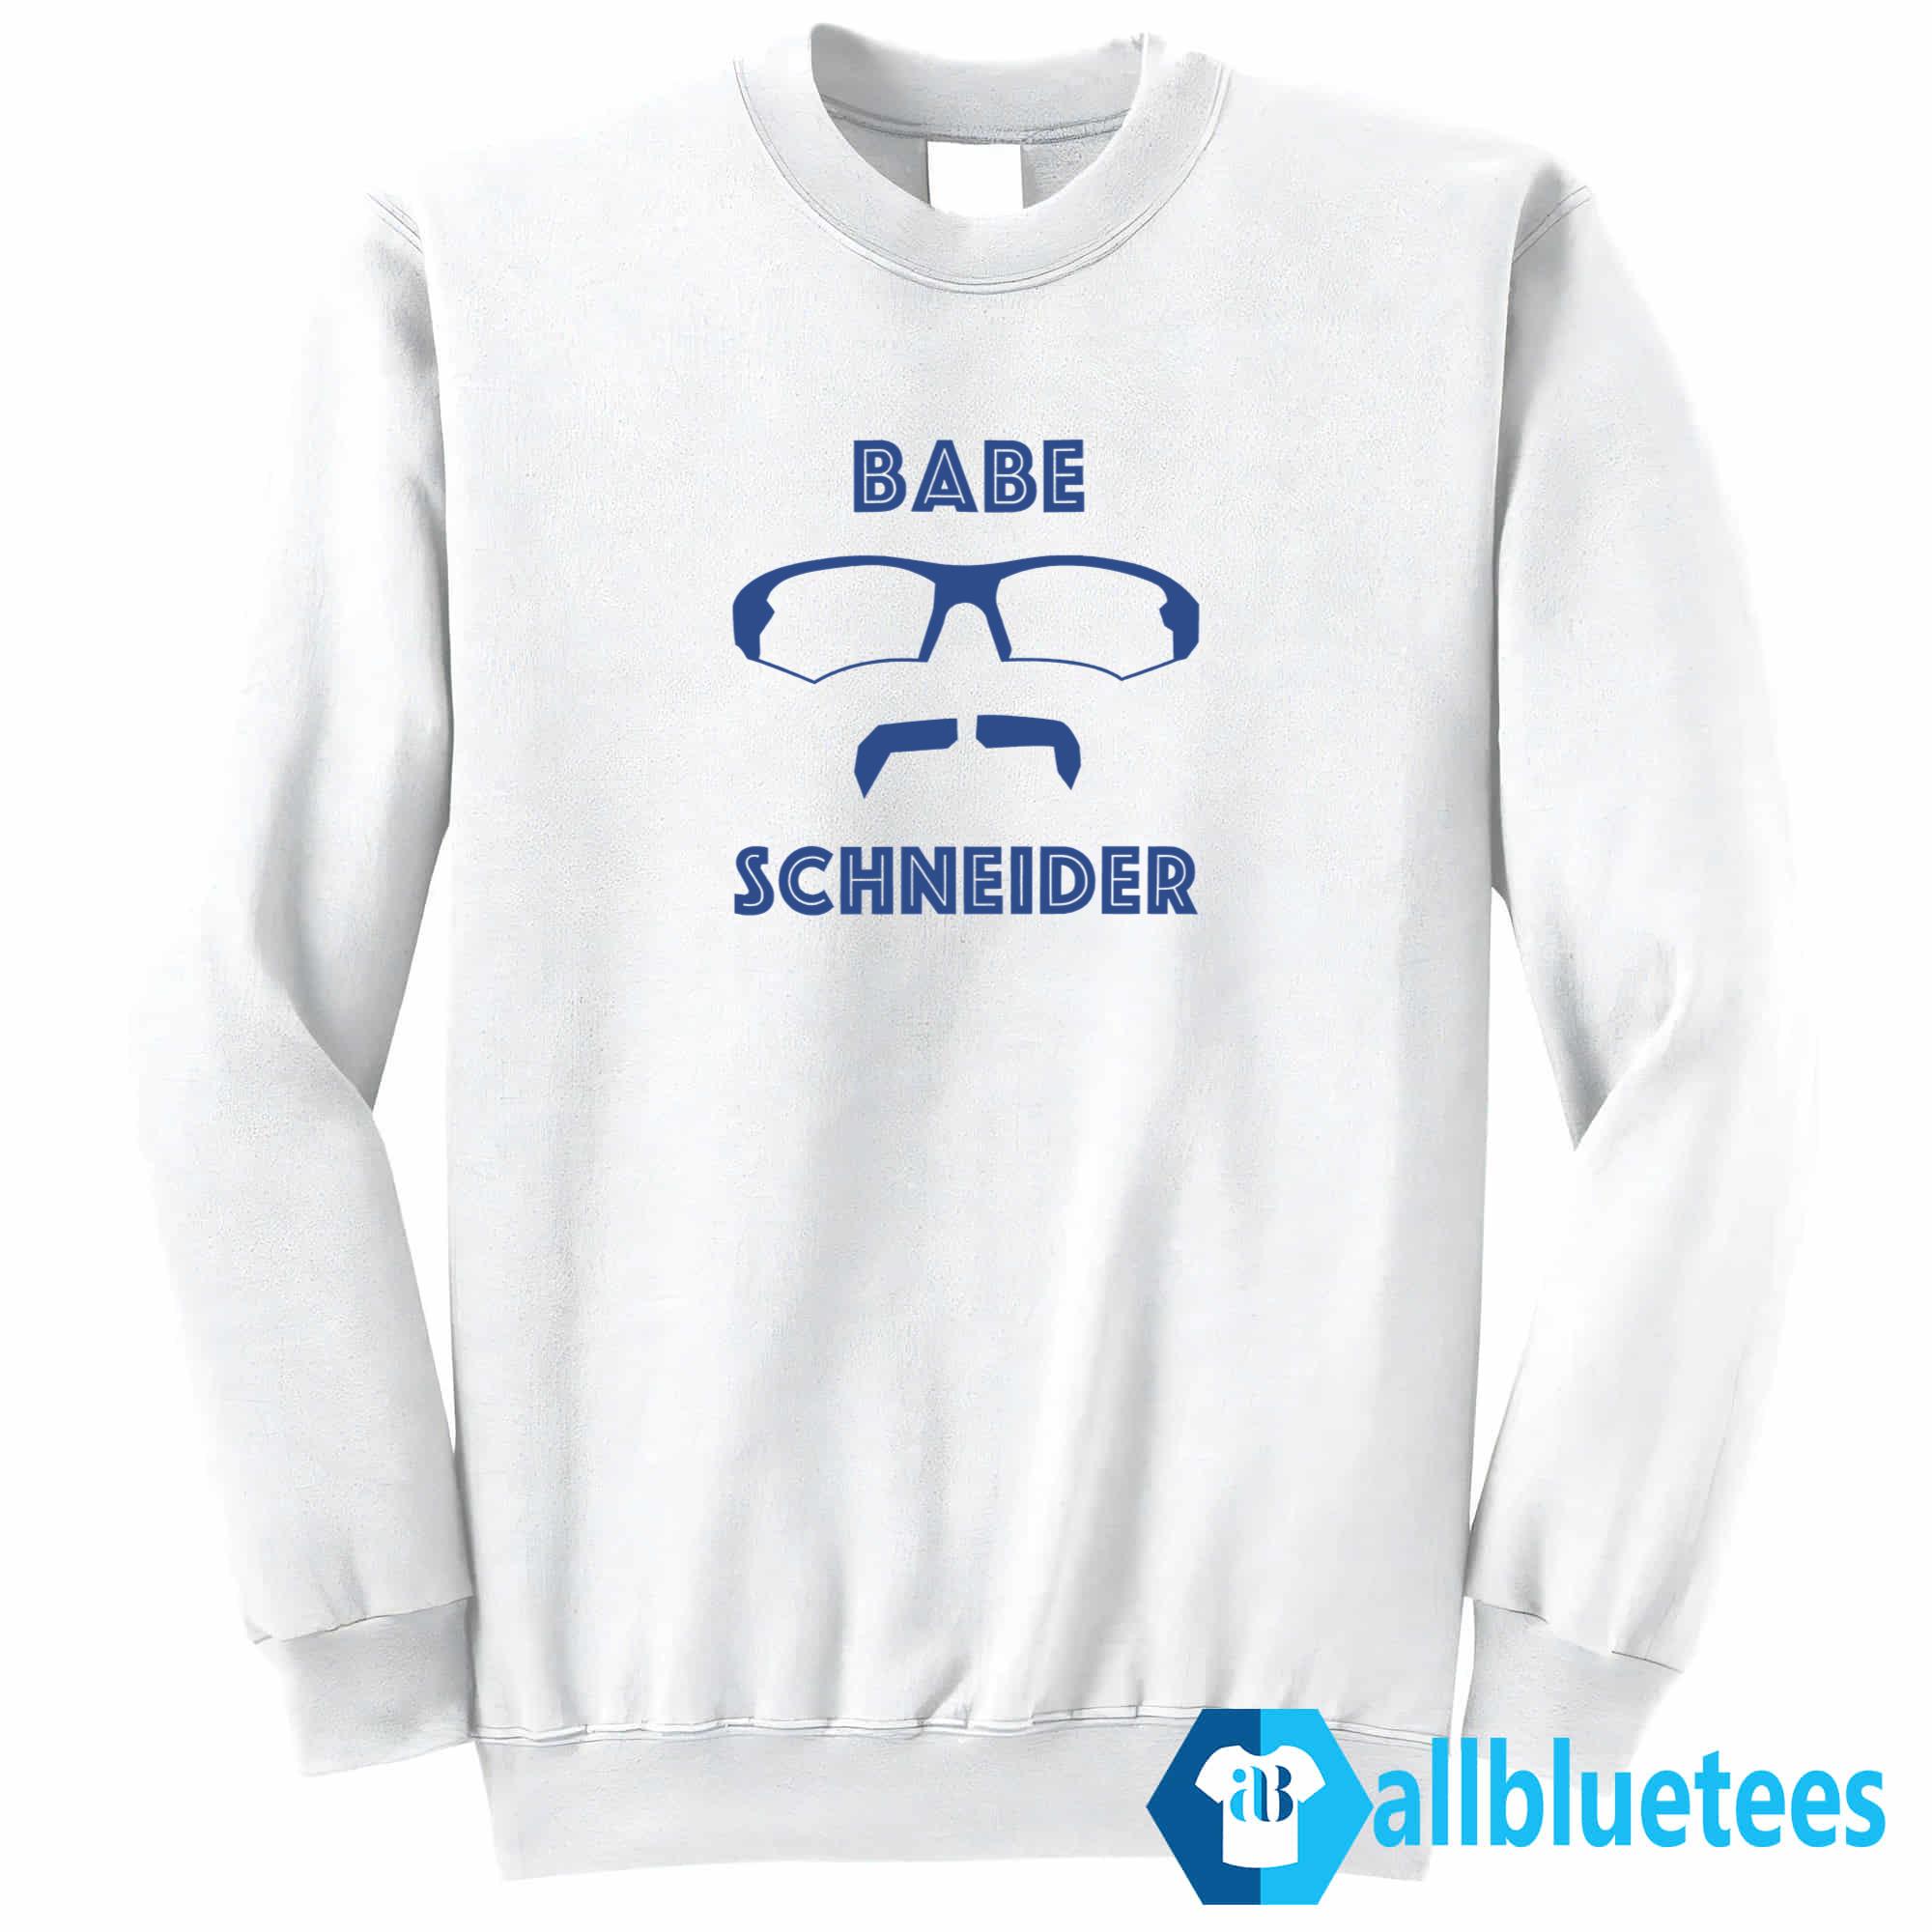 Gate 14 Podcast Davis Schneider Babe Schneider Shirt, hoodie, longsleeve,  sweatshirt, v-neck tee